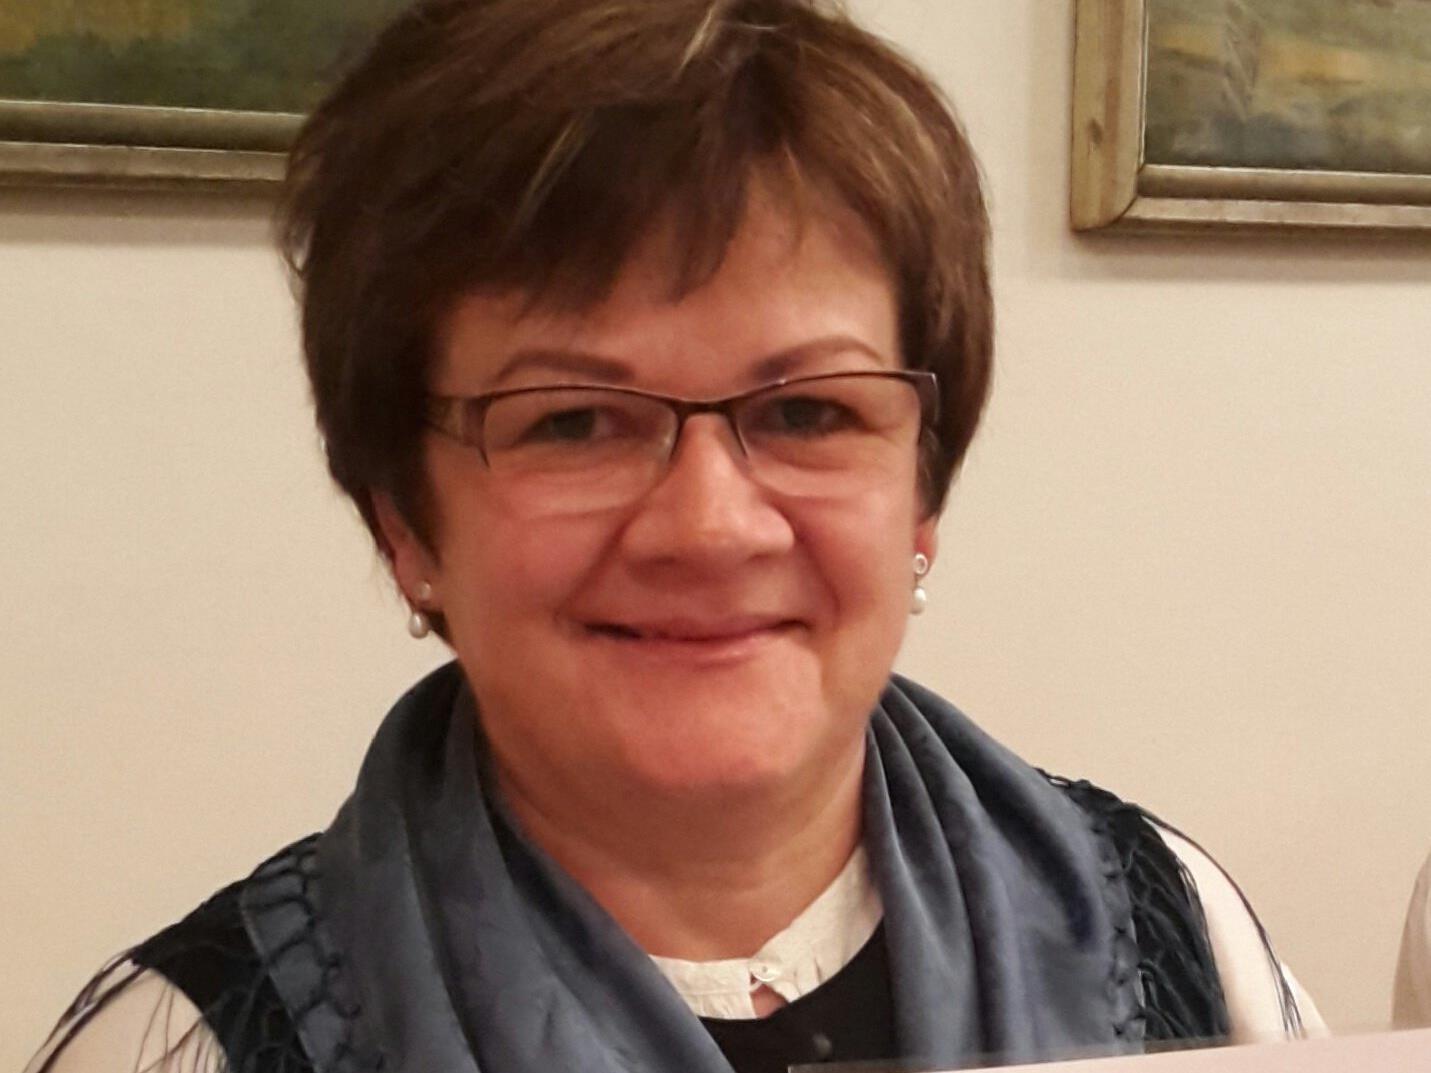 Trachtenobfrau Ulrike Bitschnau erhielt kürzlich das silberne Verdienstzeichen des Bundes österreichischer Trachten- und Heimatverbände